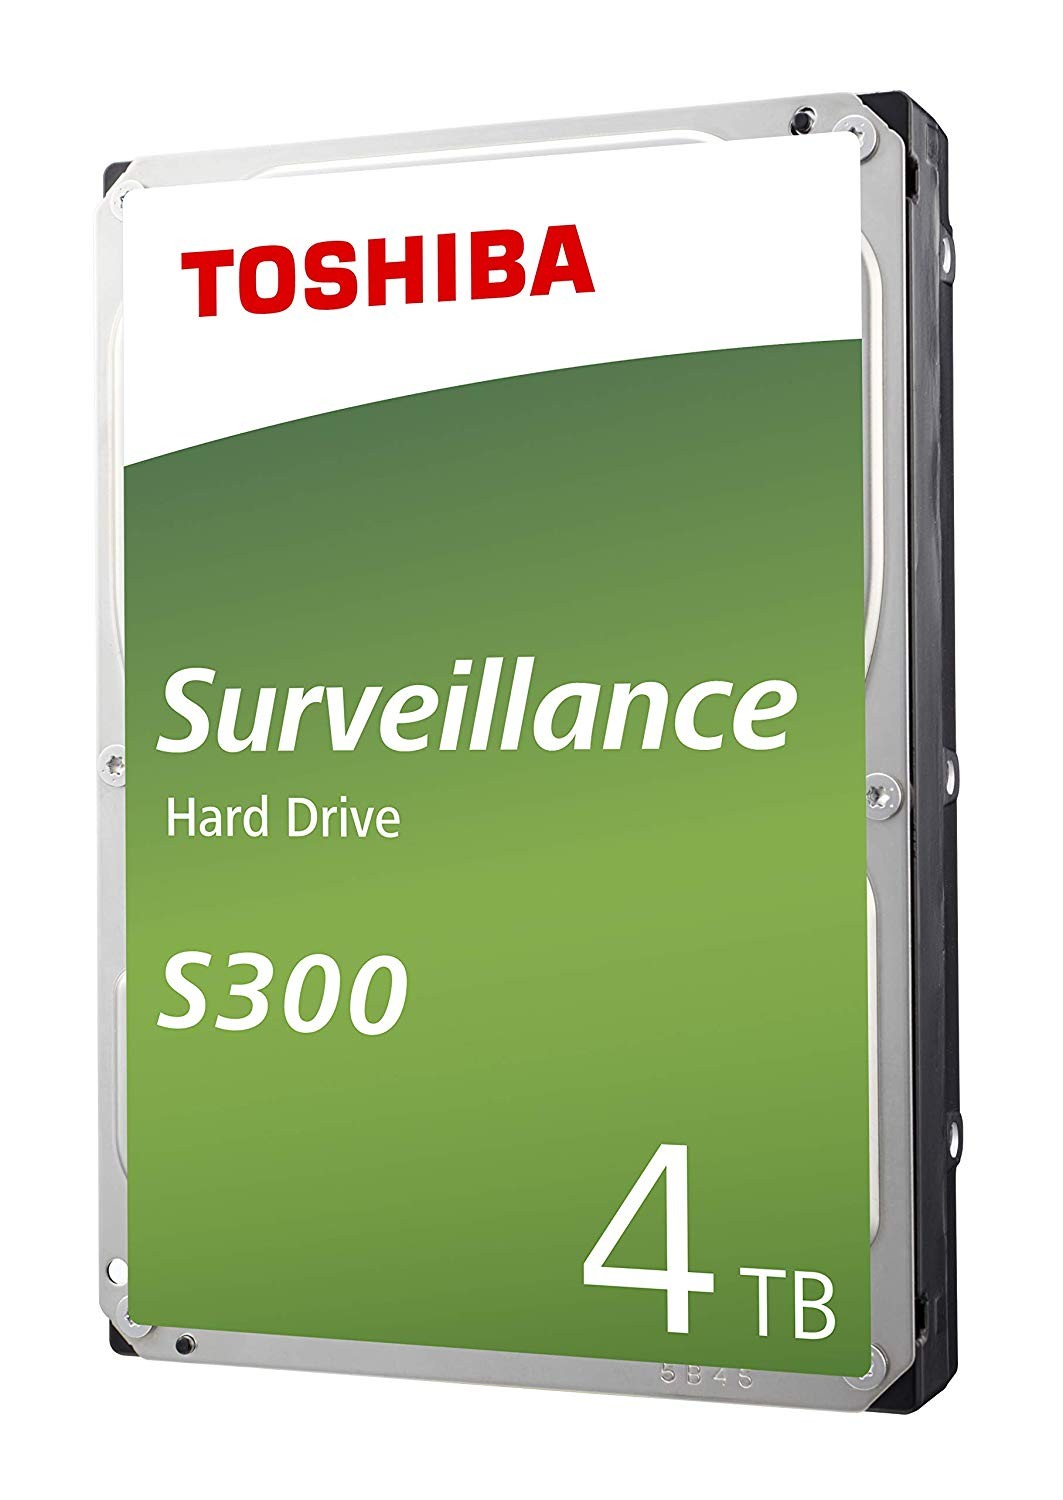 HDWT740UZSVA # TOSHIBA SURVEILLANCE HARD DRIVE 4TB 3.5" SATA